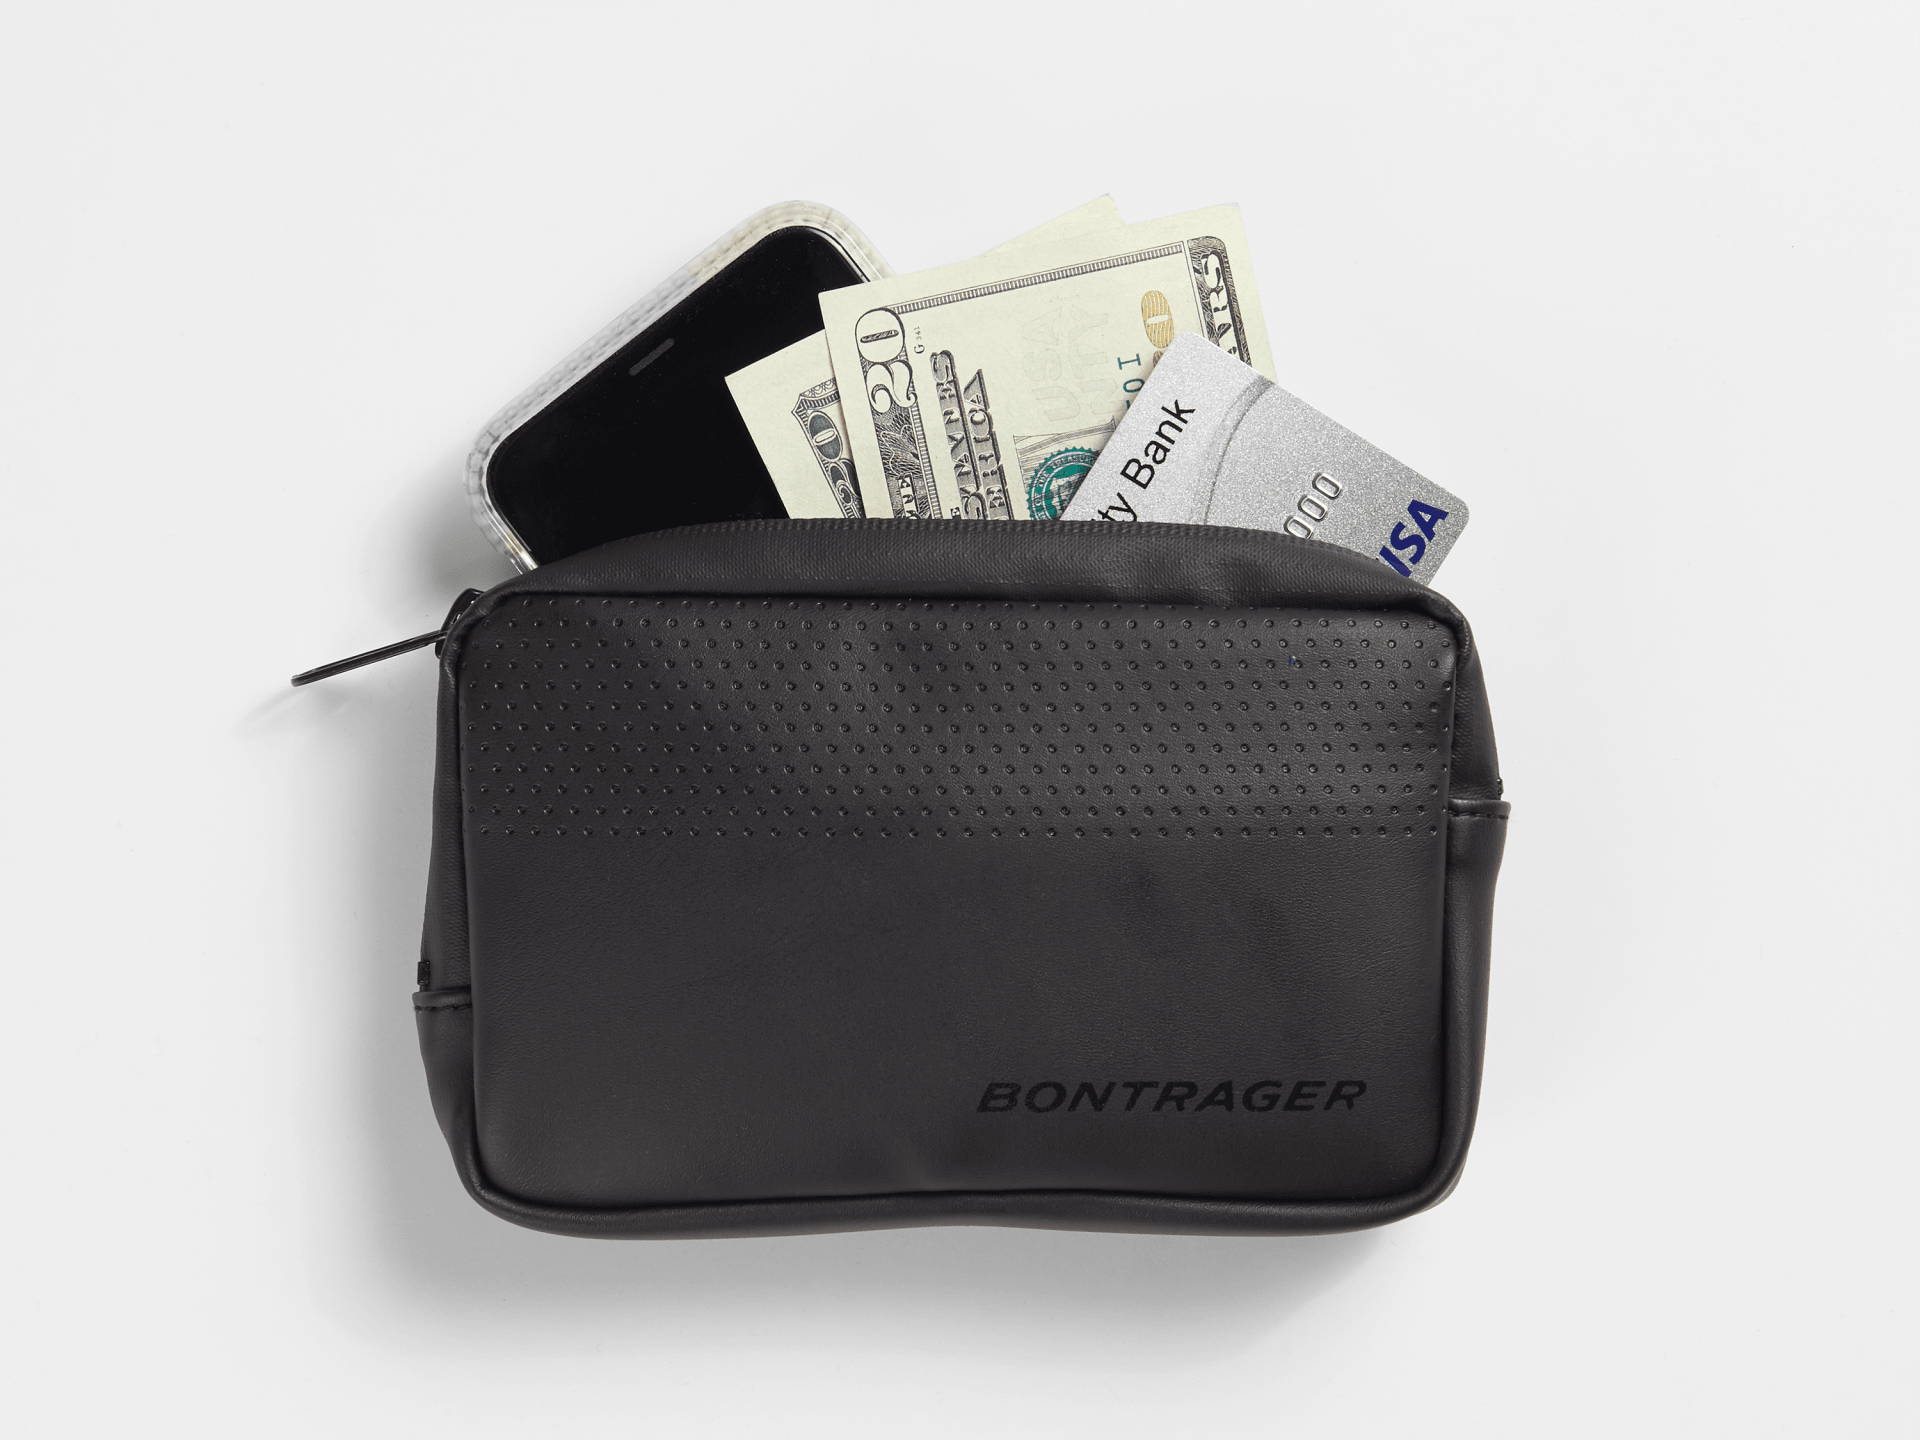 Bontrager Pro Pocket Case